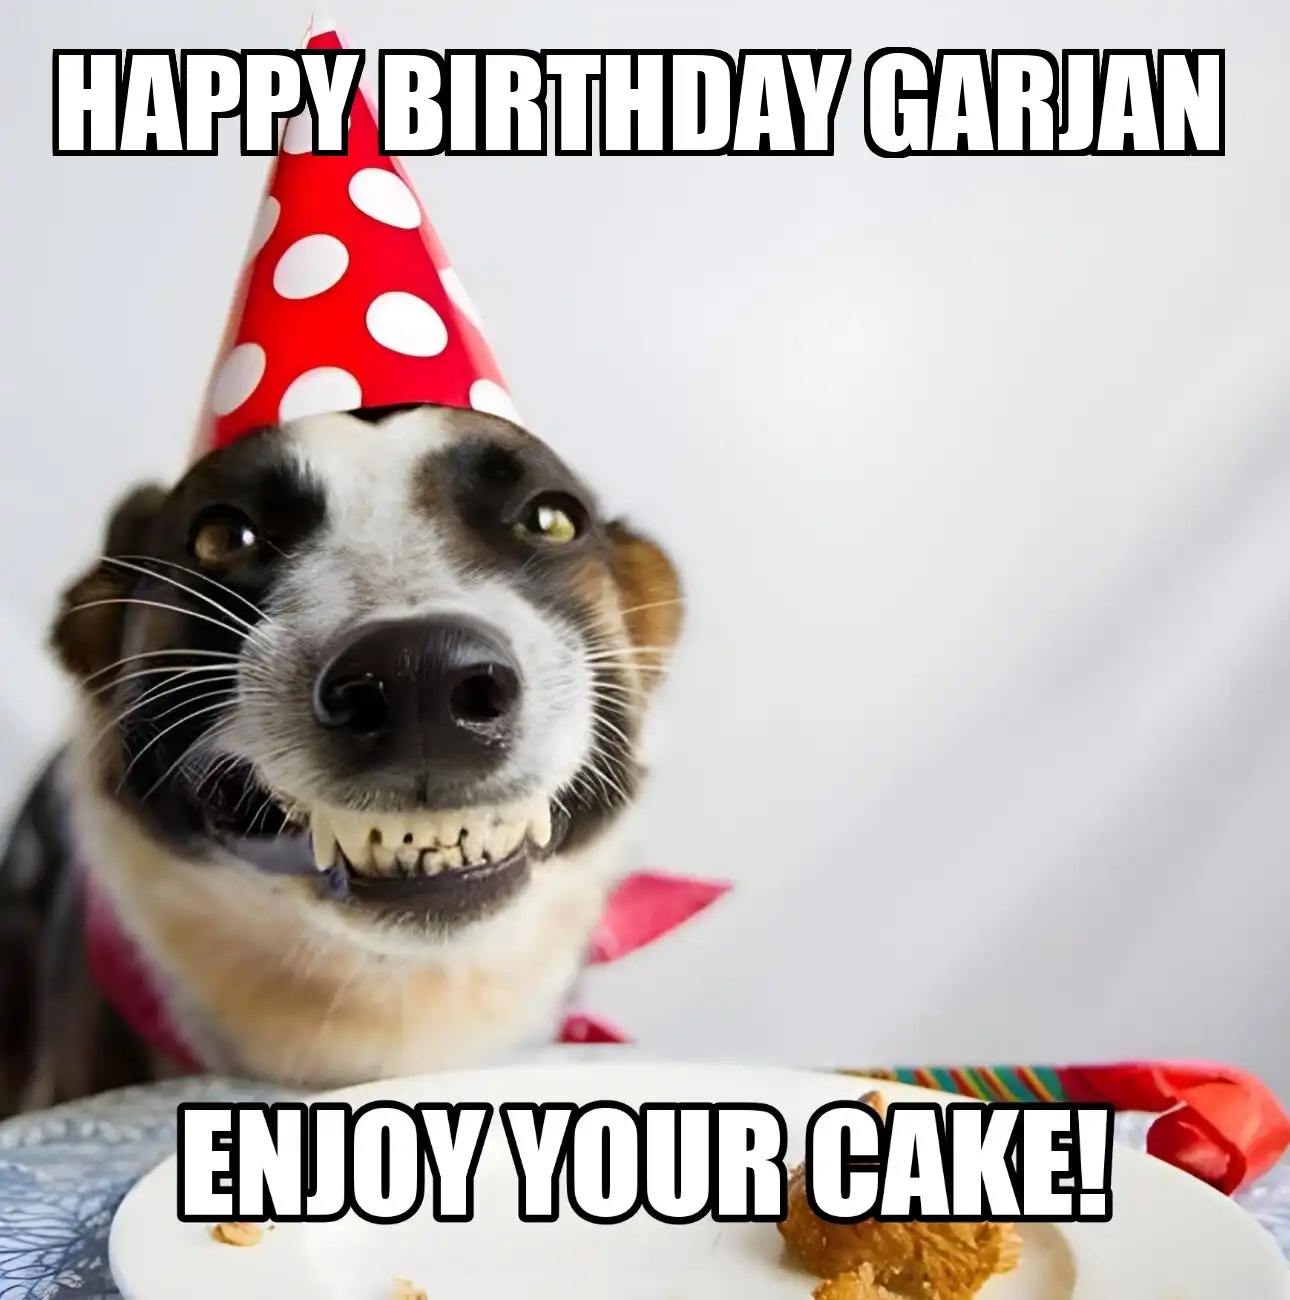 Happy Birthday Garjan Enjoy Your Cake Dog Meme